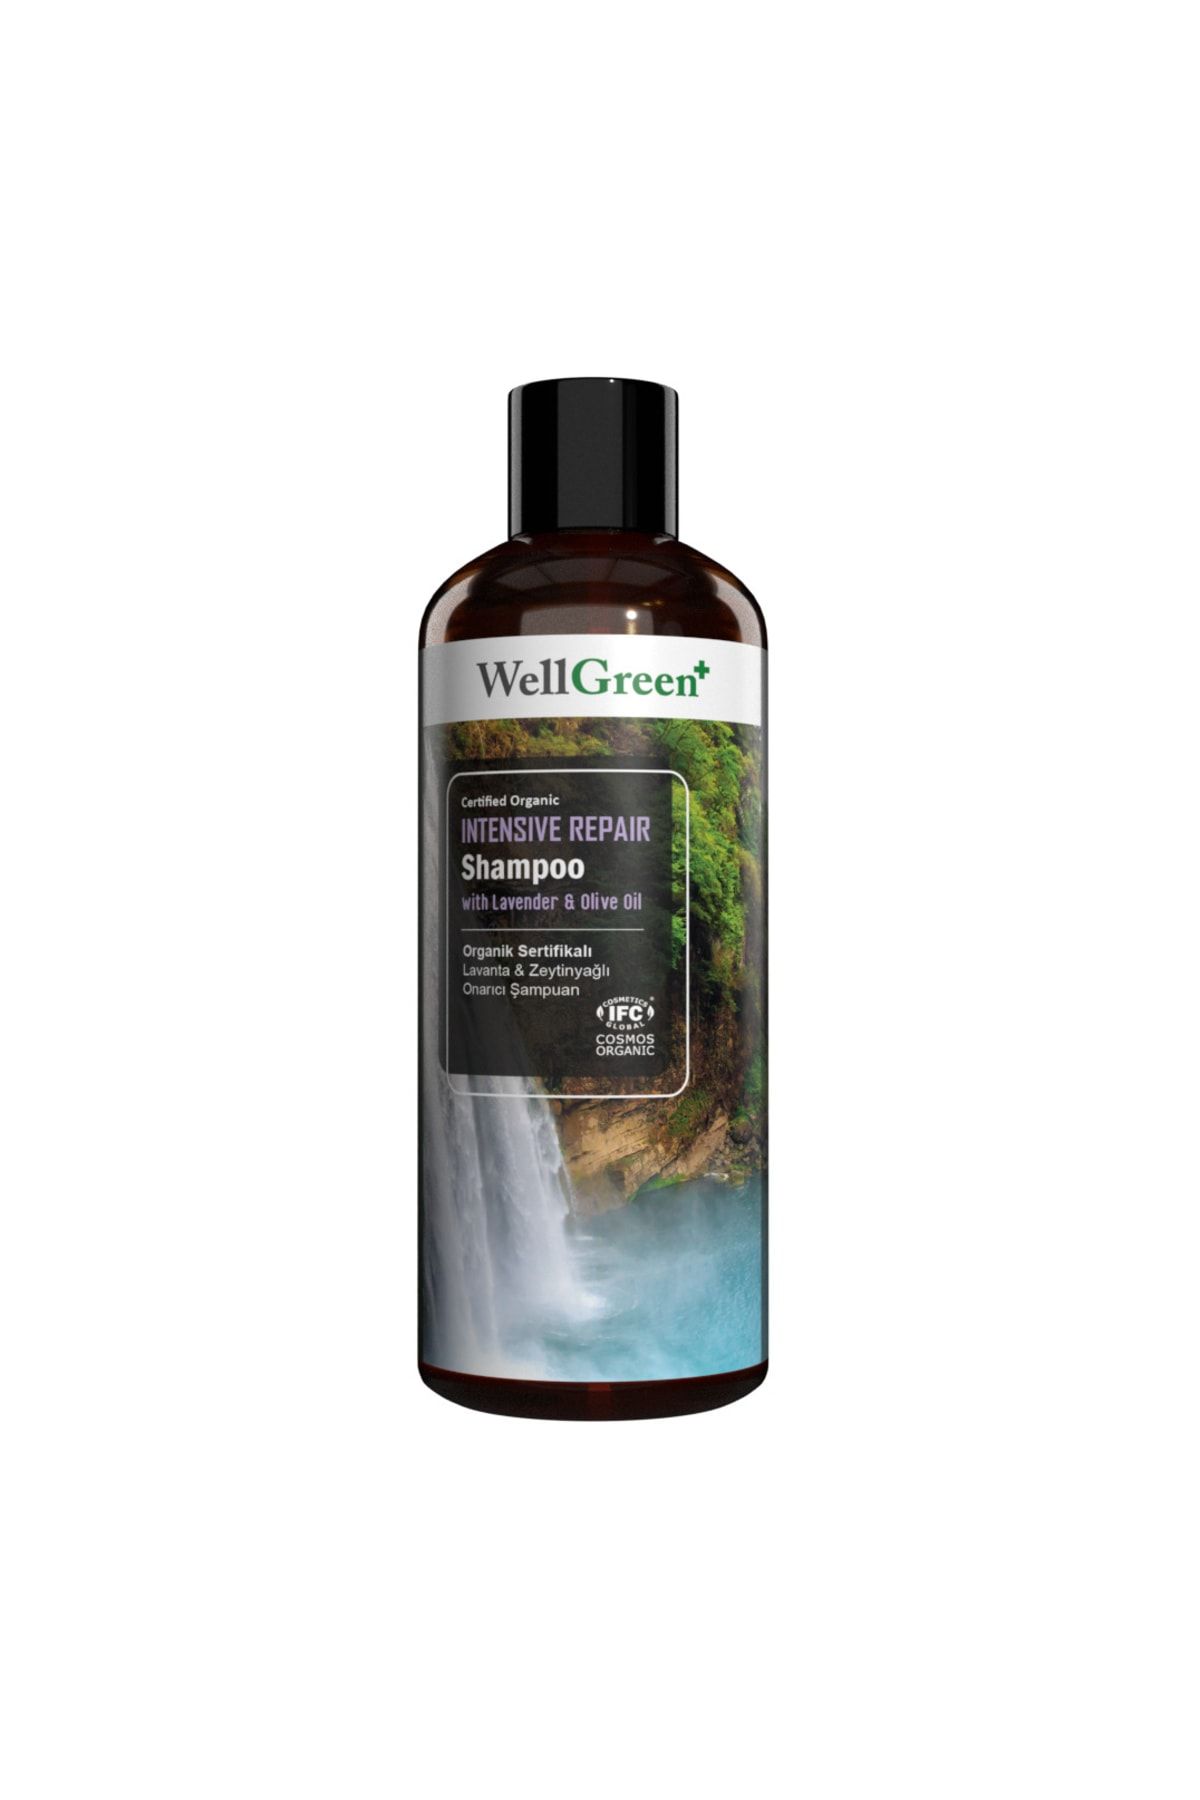 WellGreen Organik Sertifikalı Lavanta & Zeytinyağlı Onarıcı Şampuan - 400ml